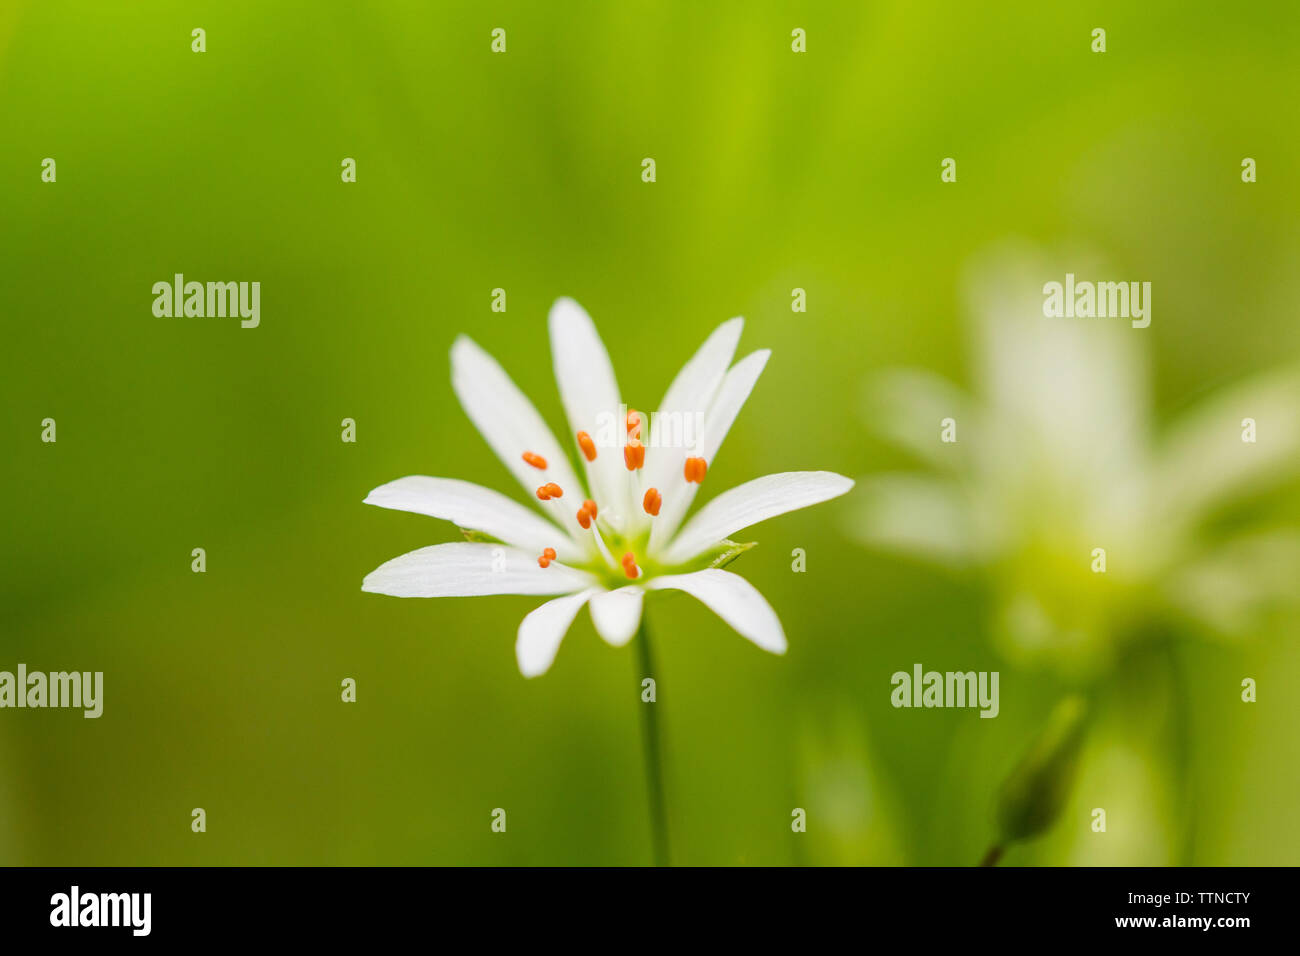 Piccolo giardino weed fiore con petali di colore bianco e rosso nelle antere Foto Stock